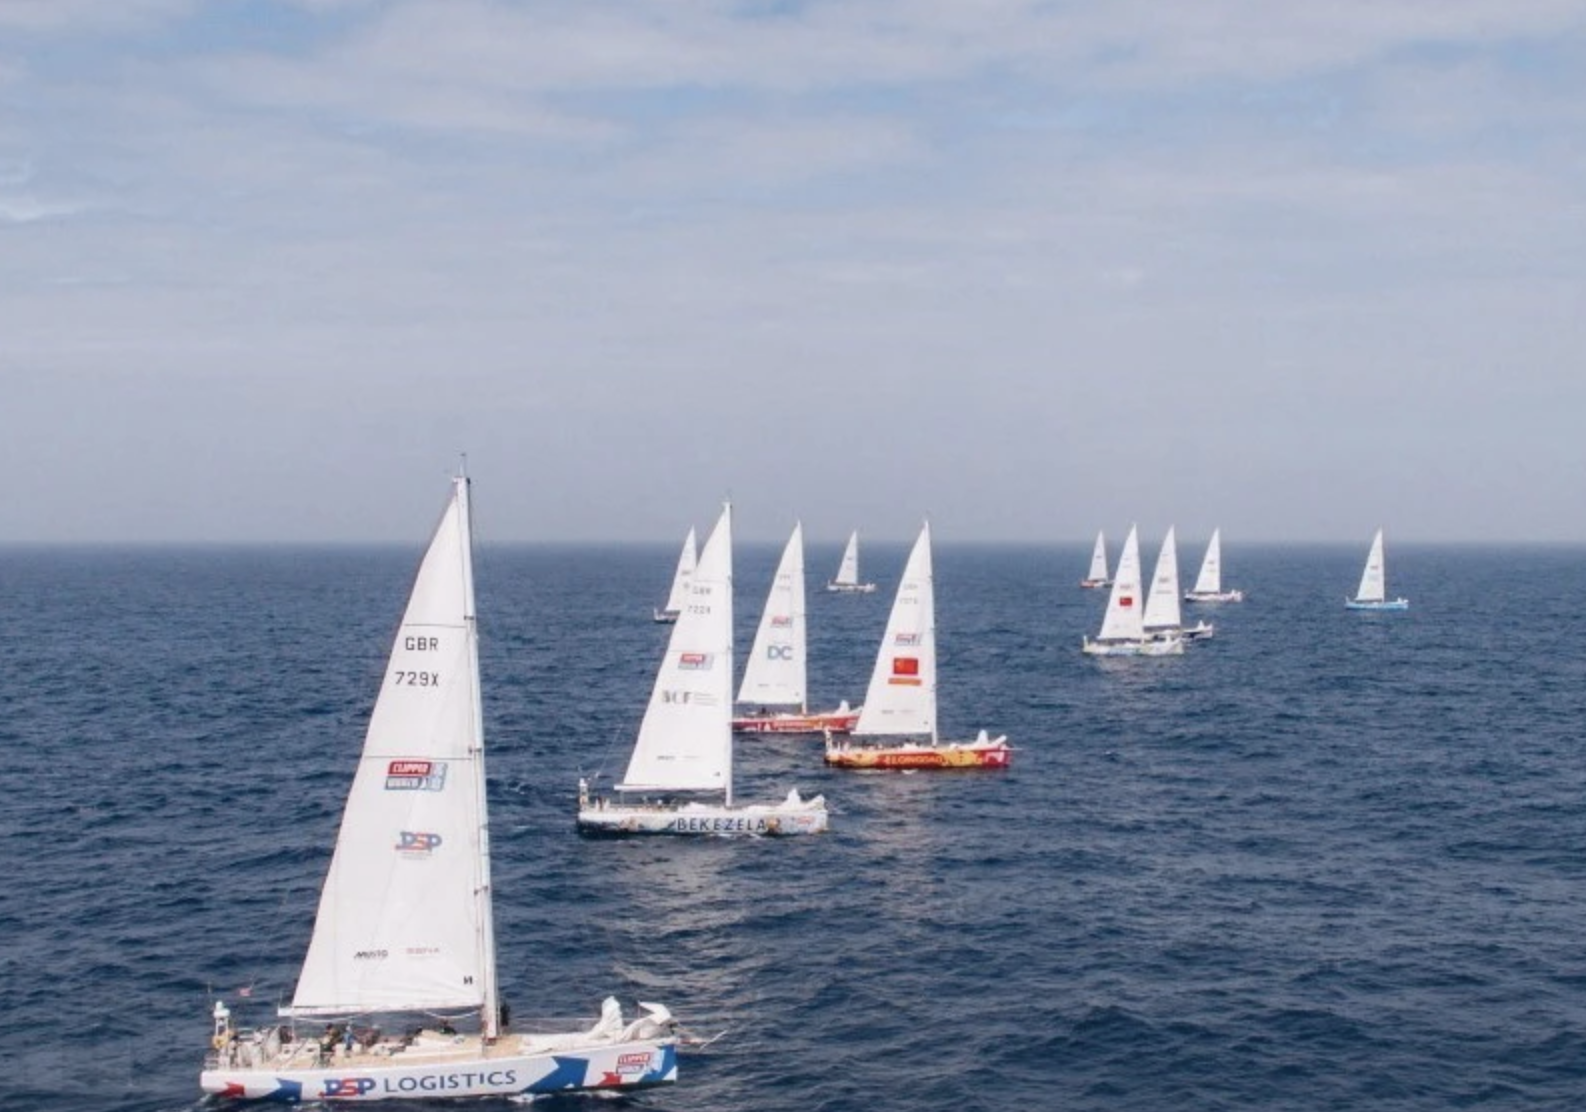 Giải đua thuyền buồm Clipper Race: Các đội thi đầu tiên cập cảng Hạ Long